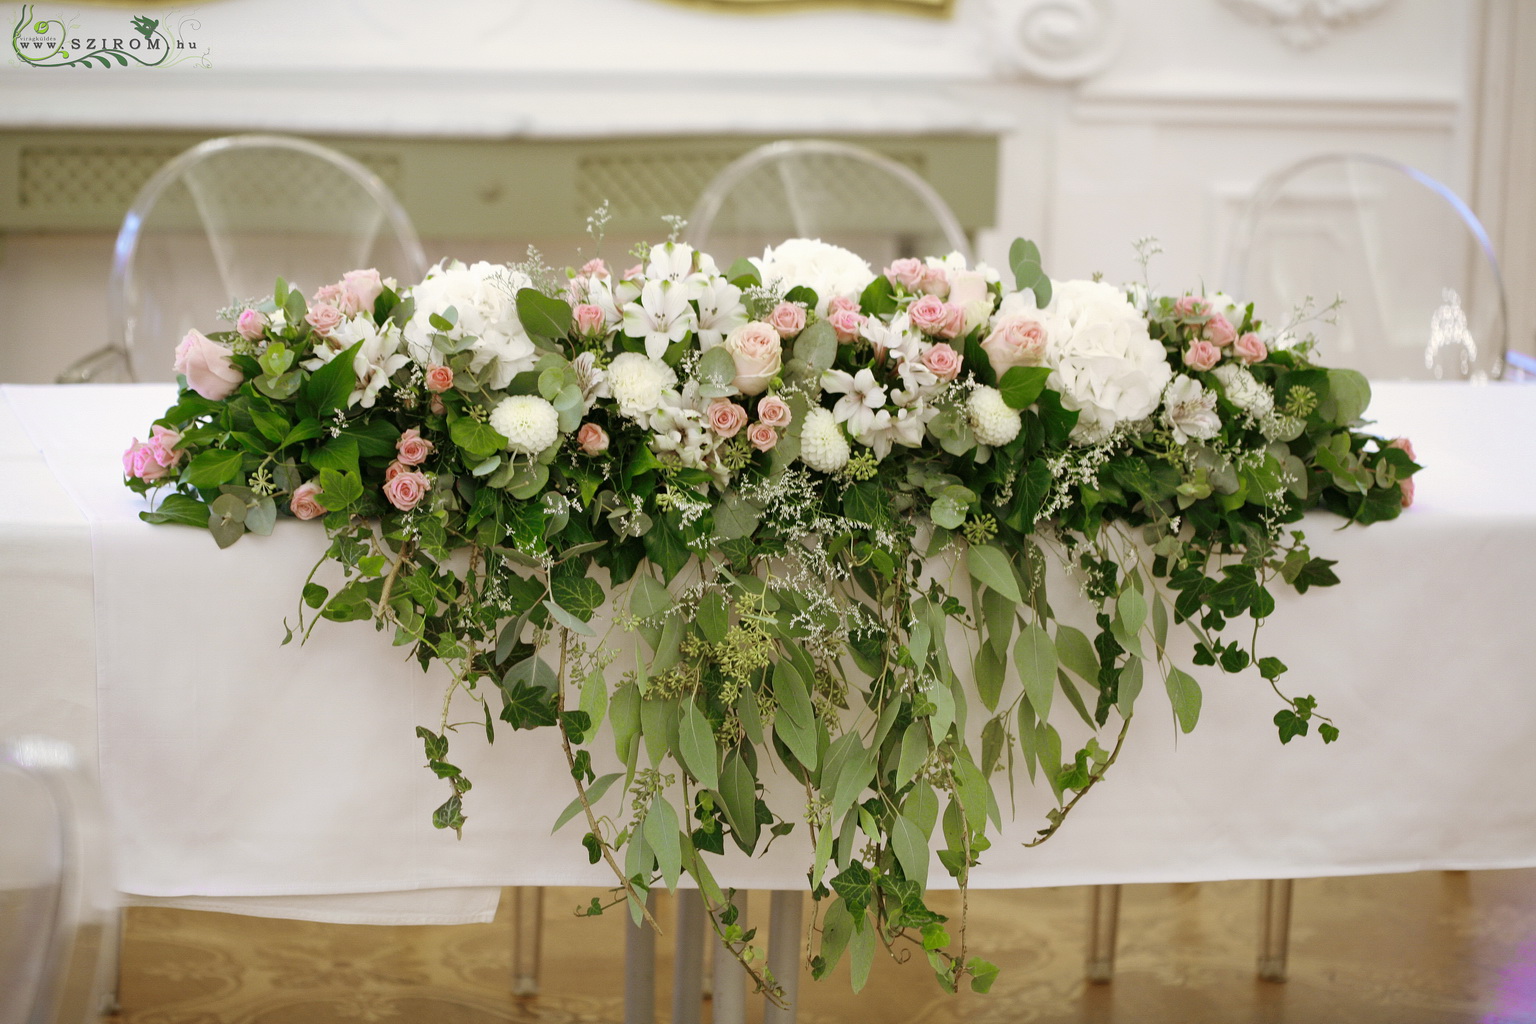 Főasztaldísz Festetics Palota (hortenzia, bokros rózsa,rózsa, dália, alstromelia, fehér, rózsaszín), esküvő